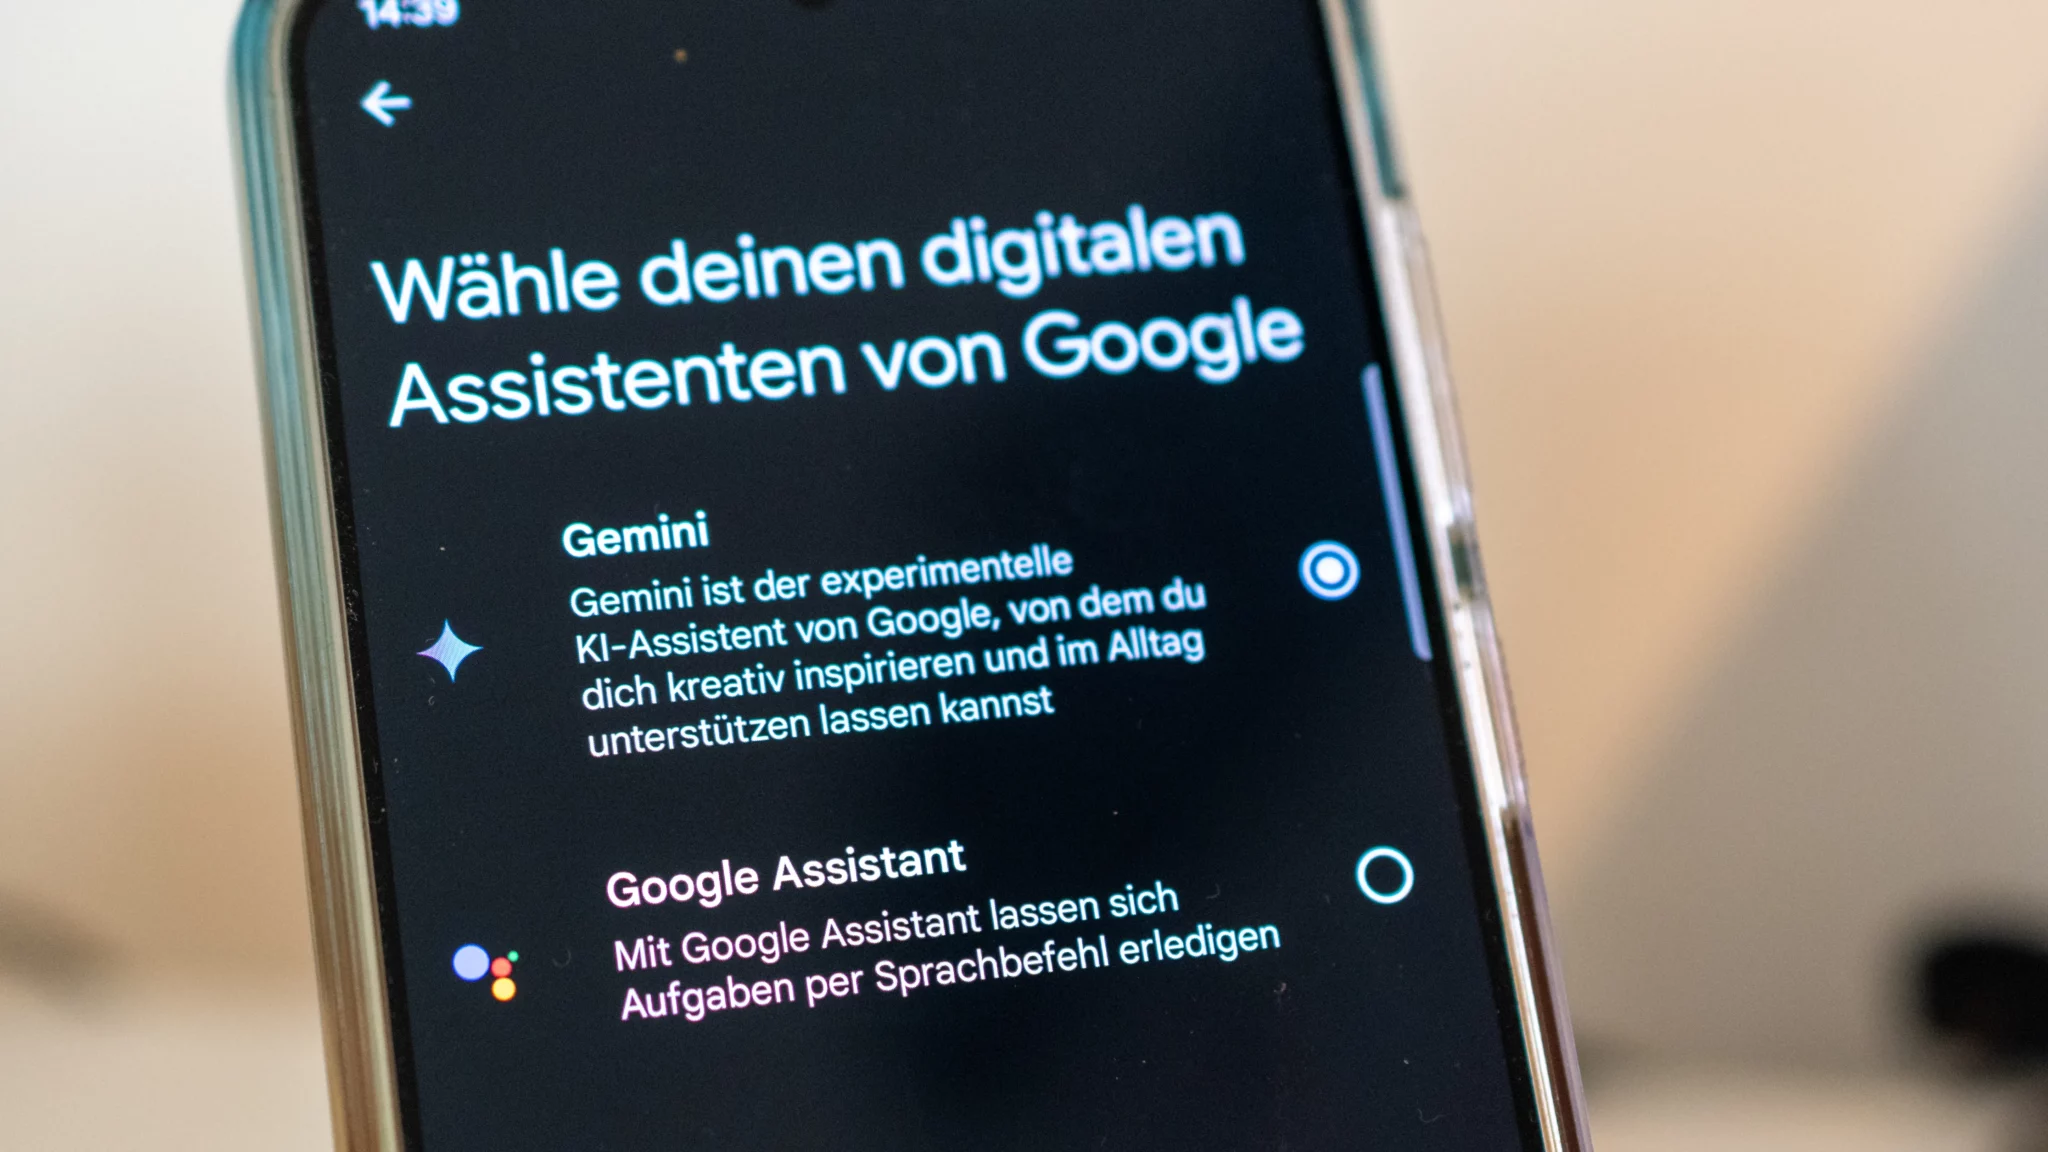 Google Gemini als Android-App jetzt auch in Deutschland verfügbar